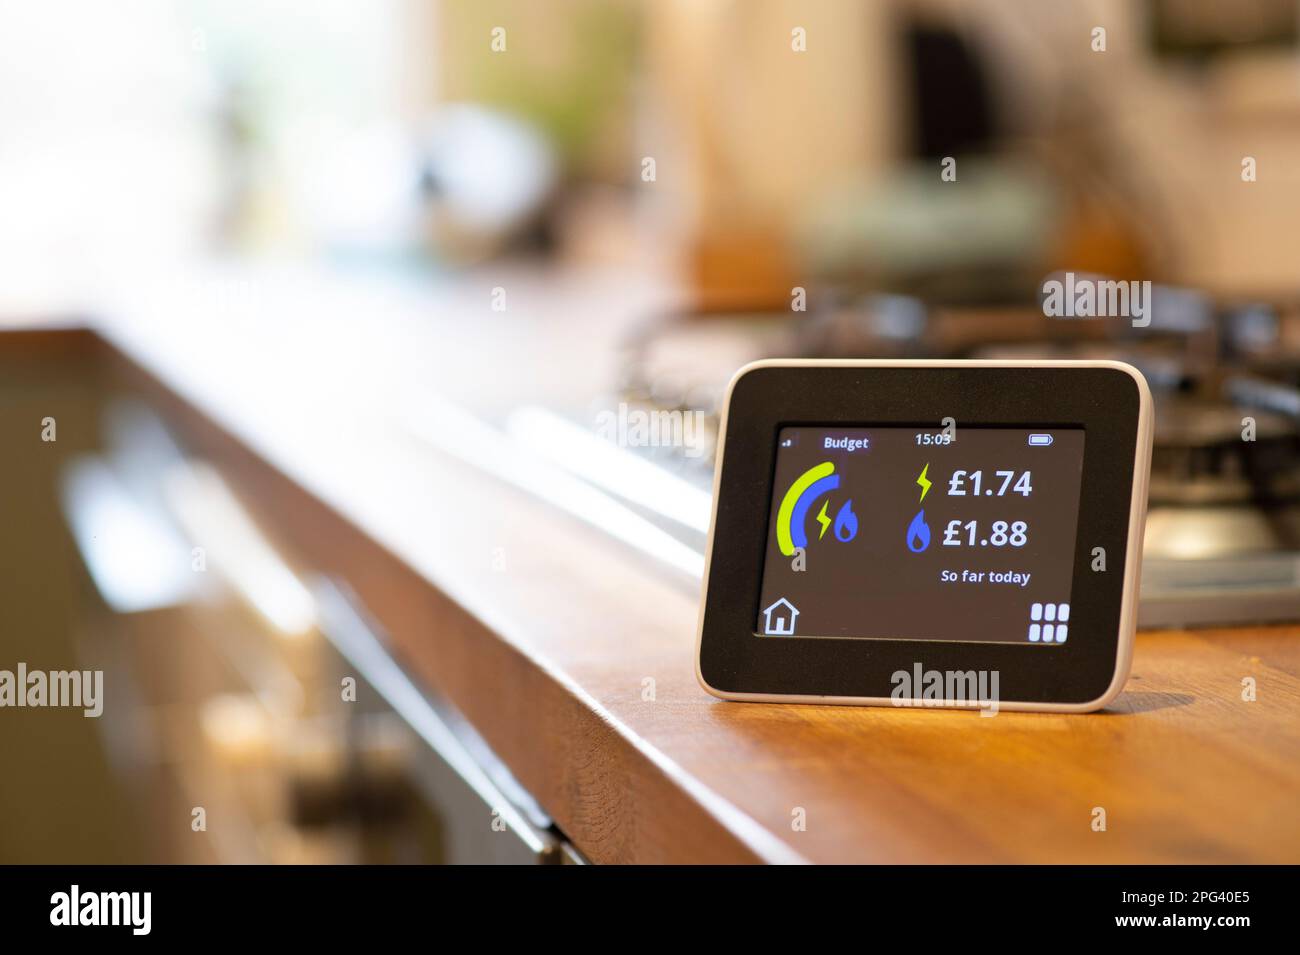 misuratore intelligente di energia domestica su un piano di lavoro della cucina che mostra la quantità di energia utilizzata in sterline britanniche Foto Stock